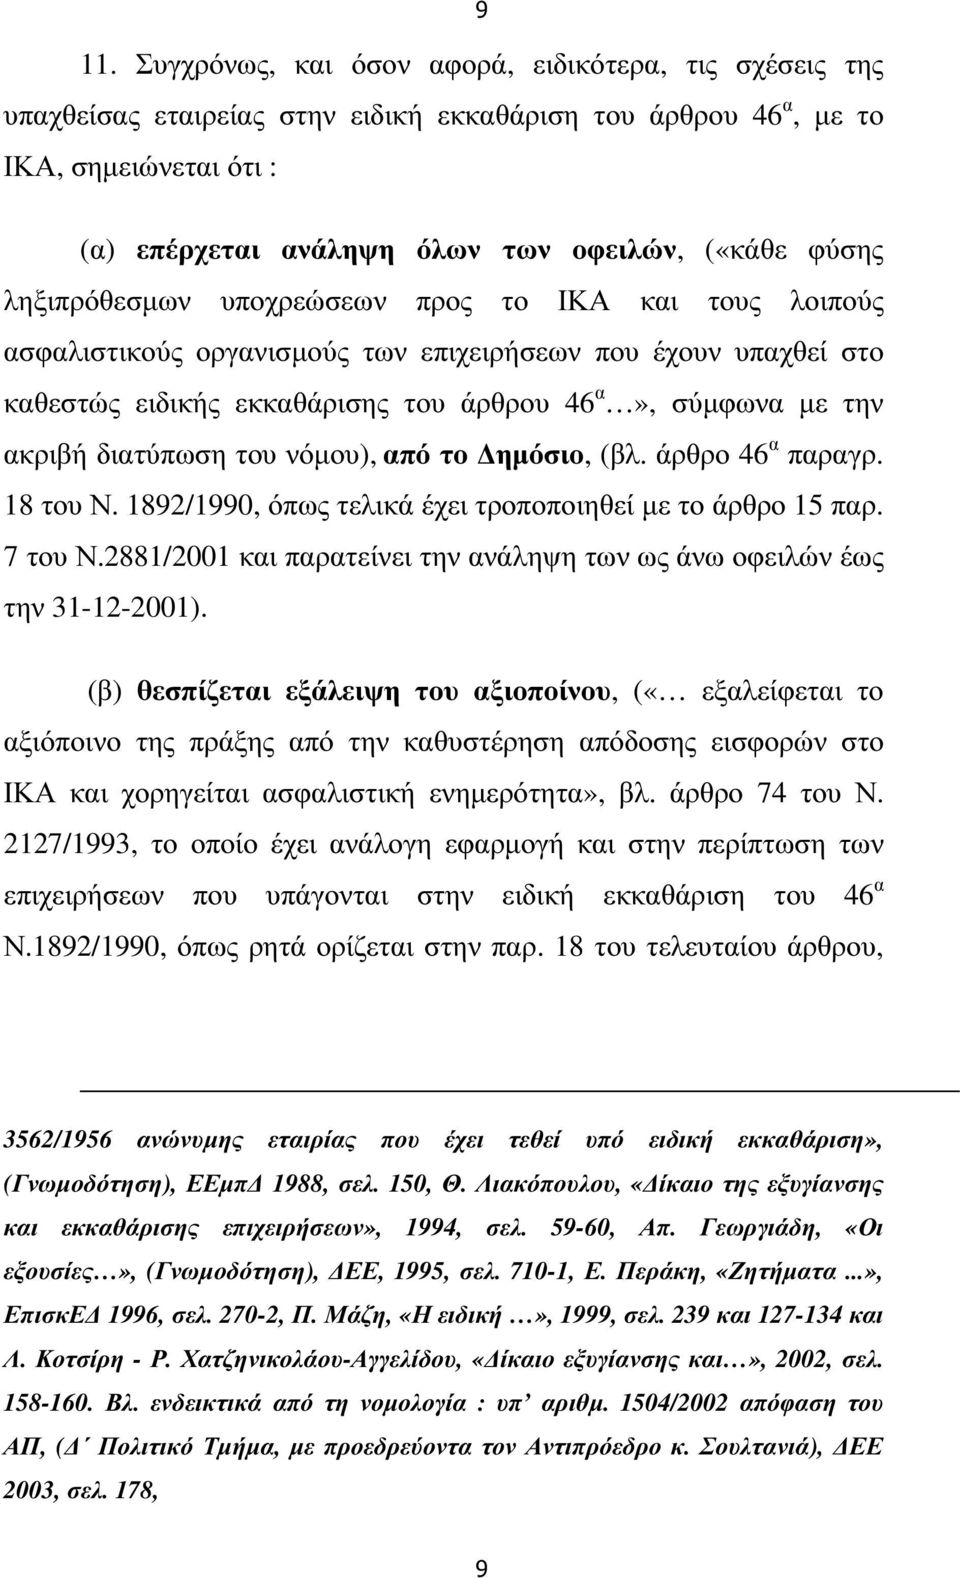 διατύπωση του νόµου), από το ηµόσιο, (βλ. άρθρο 46 α παραγρ. 18 του Ν. 1892/1990, όπως τελικά έχει τροποποιηθεί µε το άρθρο 15 παρ. 7 του Ν.